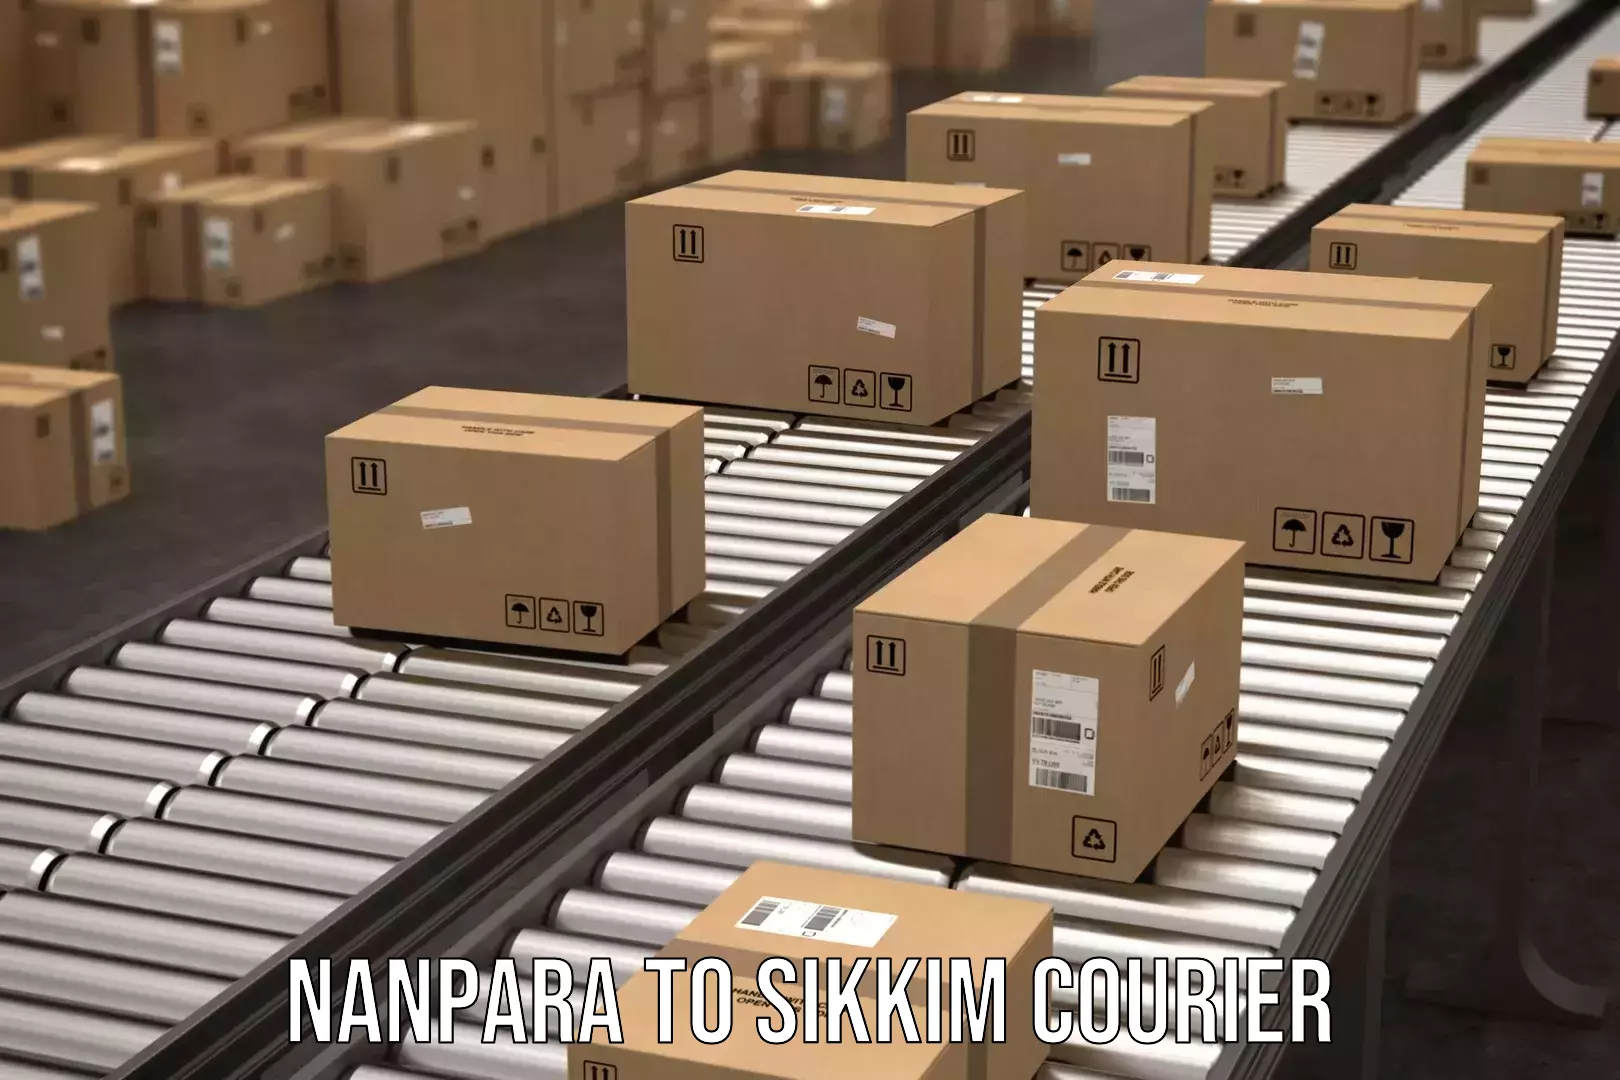 Smart shipping technology Nanpara to Ranipool